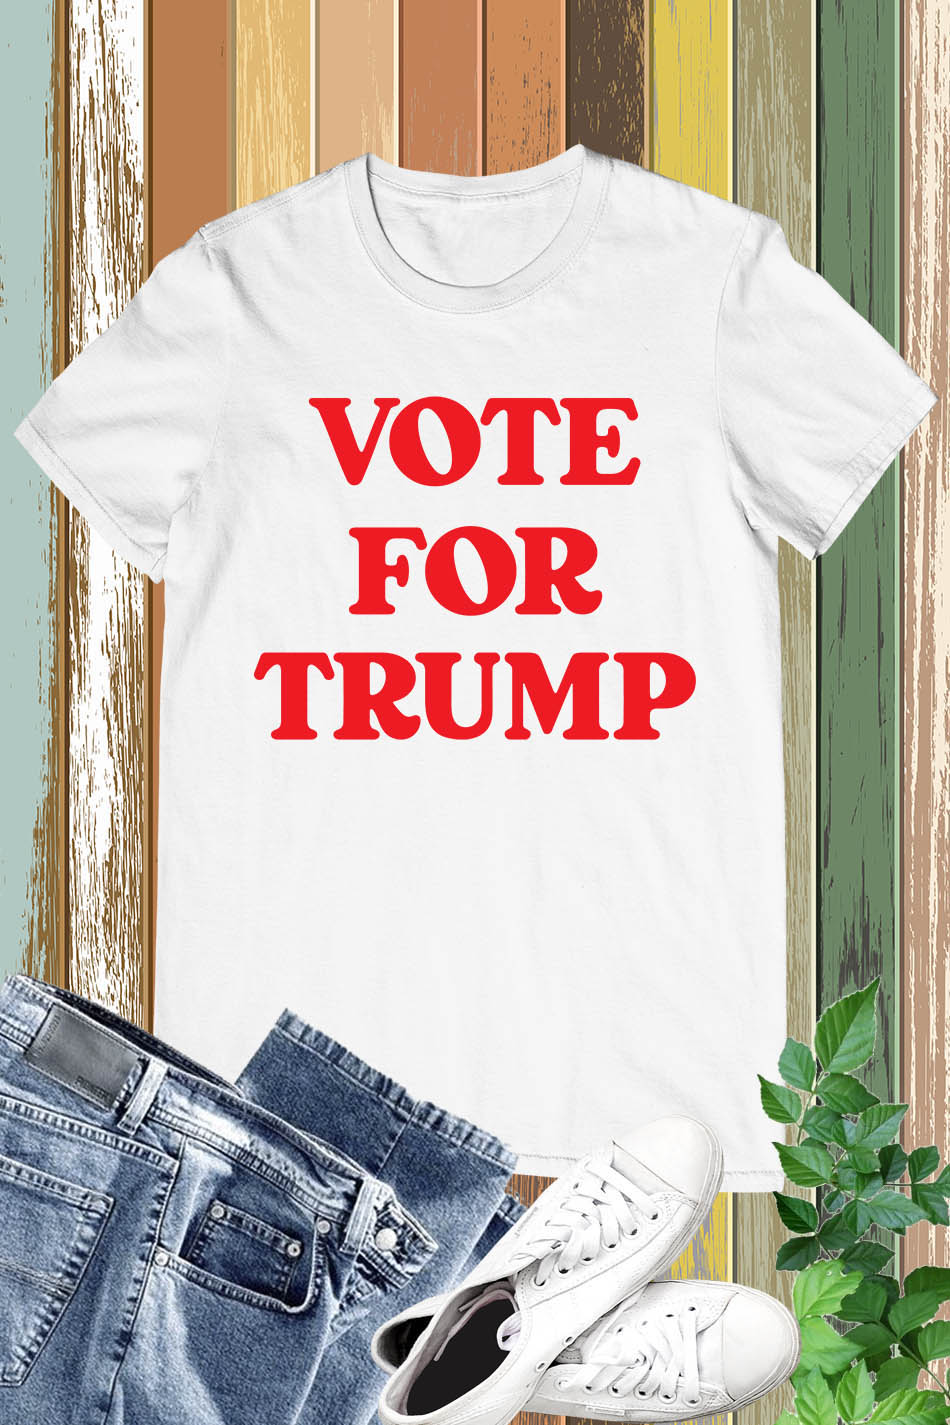 Custom Vote for Name Ringer Shirt